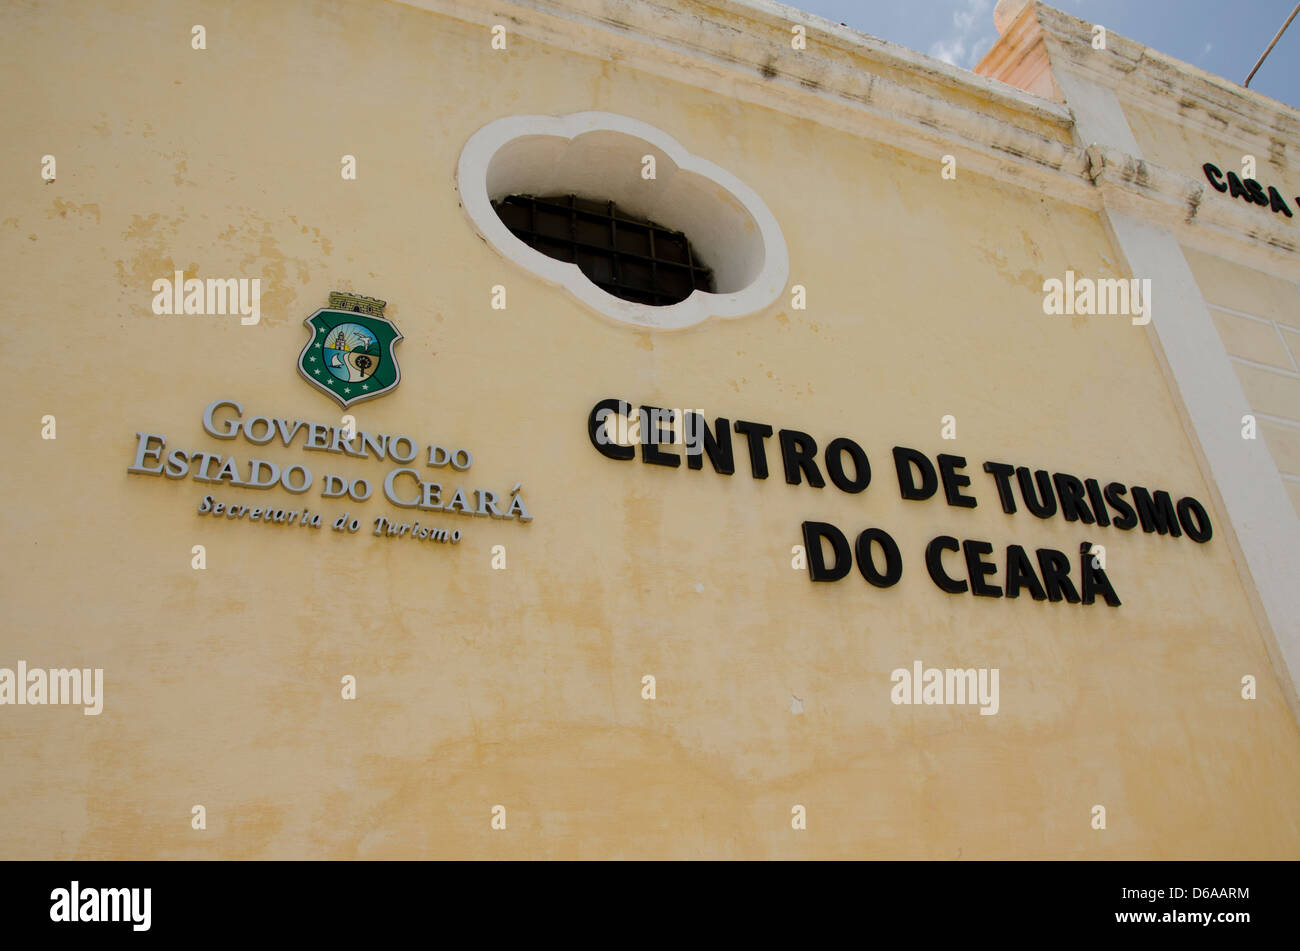 Brasilien, Fortaleza. Emcetur touristisches Zentrum, Handwerkermarkt, untergebracht in einem ehemaligen Gefängnis. Stockfoto